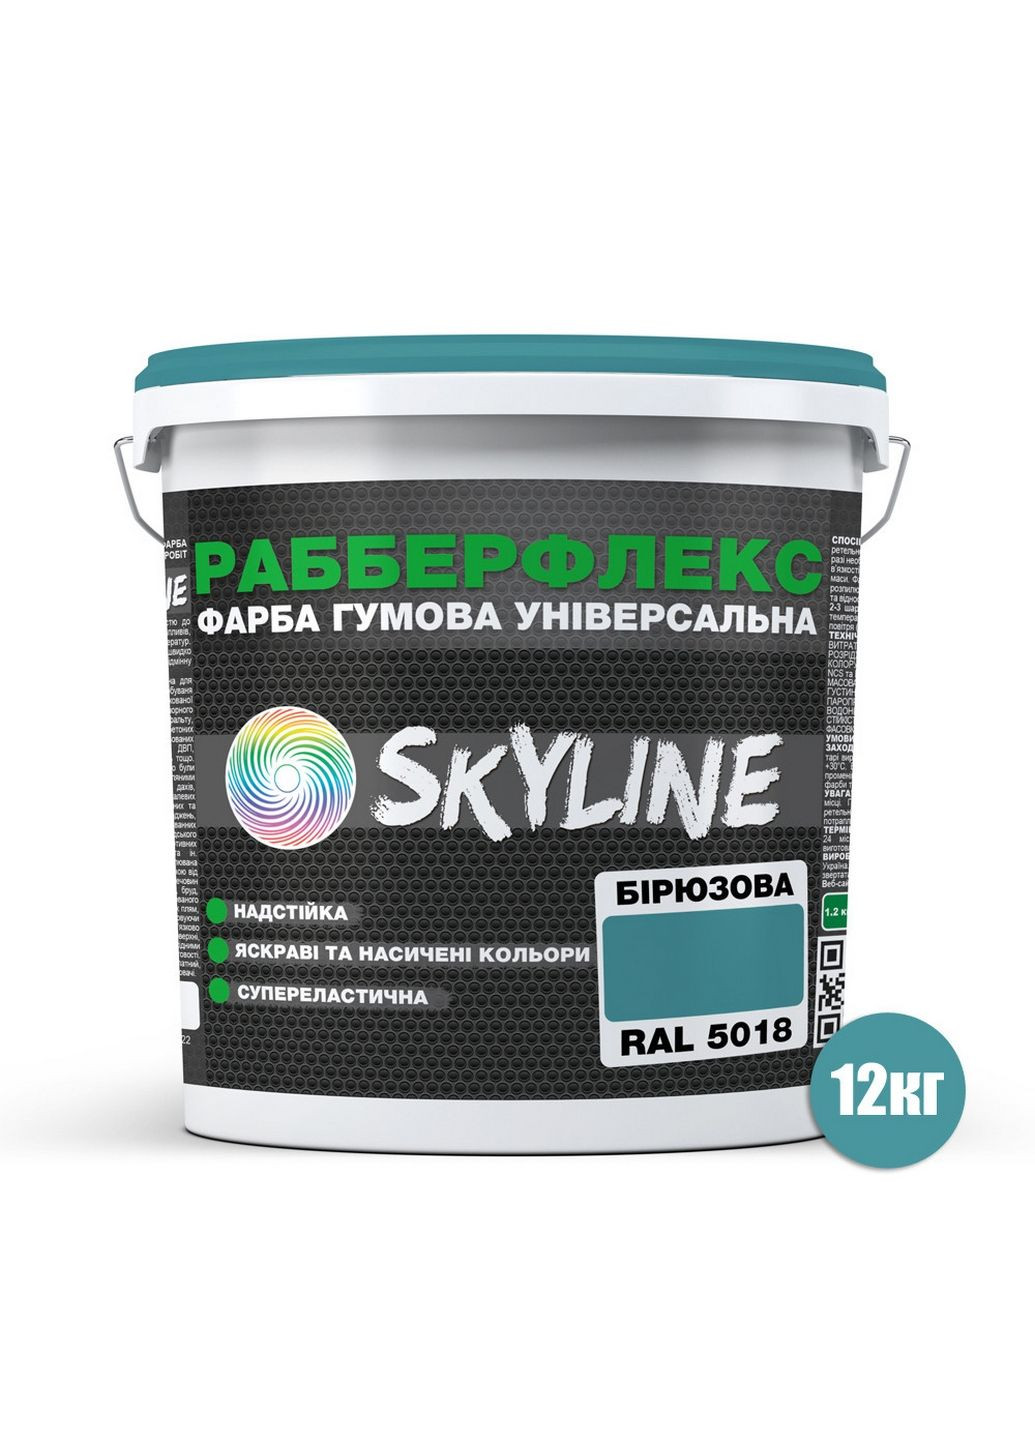 Надстійка фарба гумова супереластична «РабберФлекс» 12 кг SkyLine (289460341)